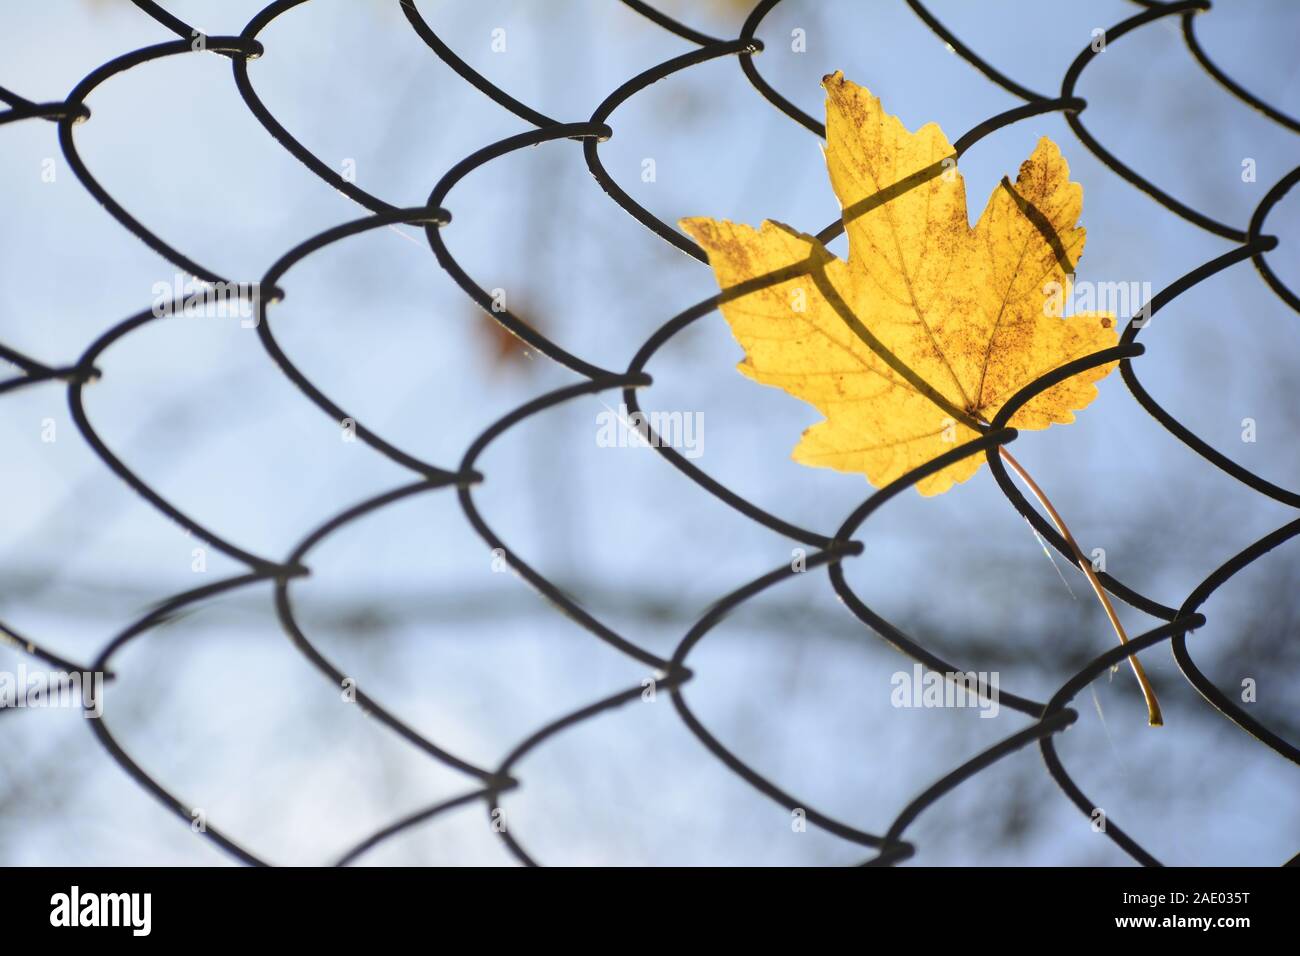 Chiusura del singolo maple leaf giallo appeso in rete metallica, autunno concetto close up shot Foto Stock